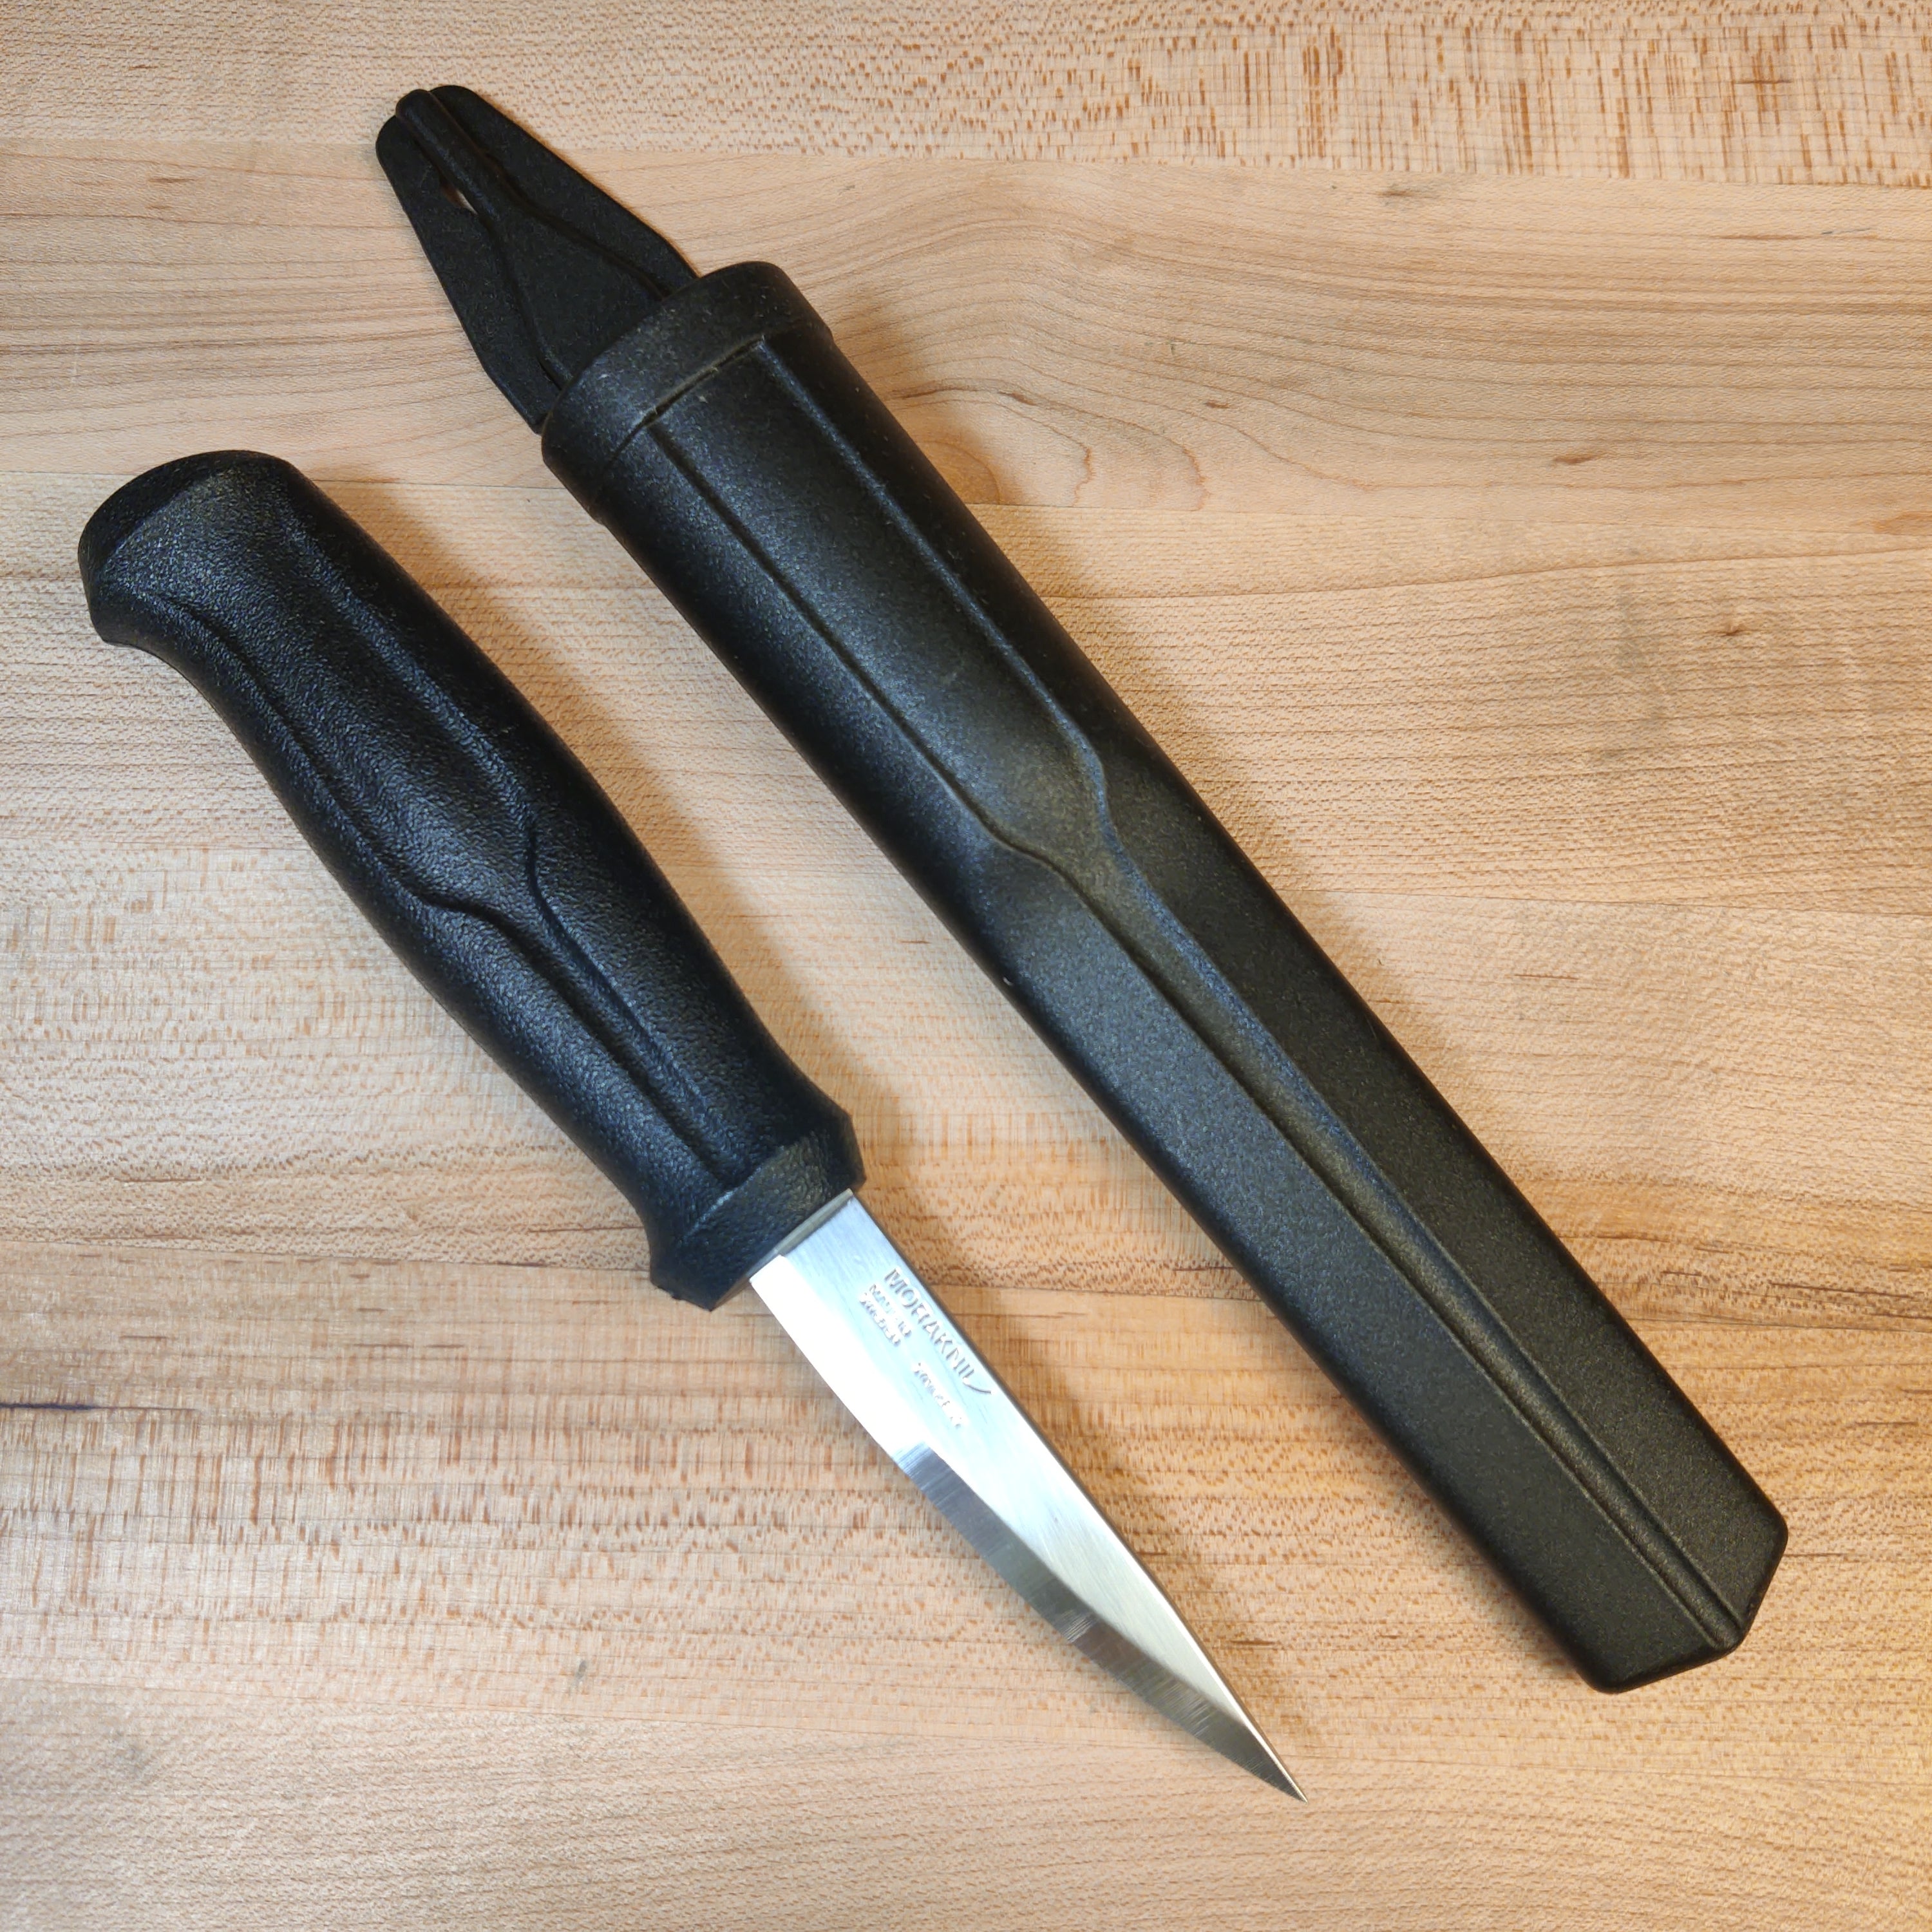 Morakniv Bushcraft Survival Black Blade – Bernal Cutlery